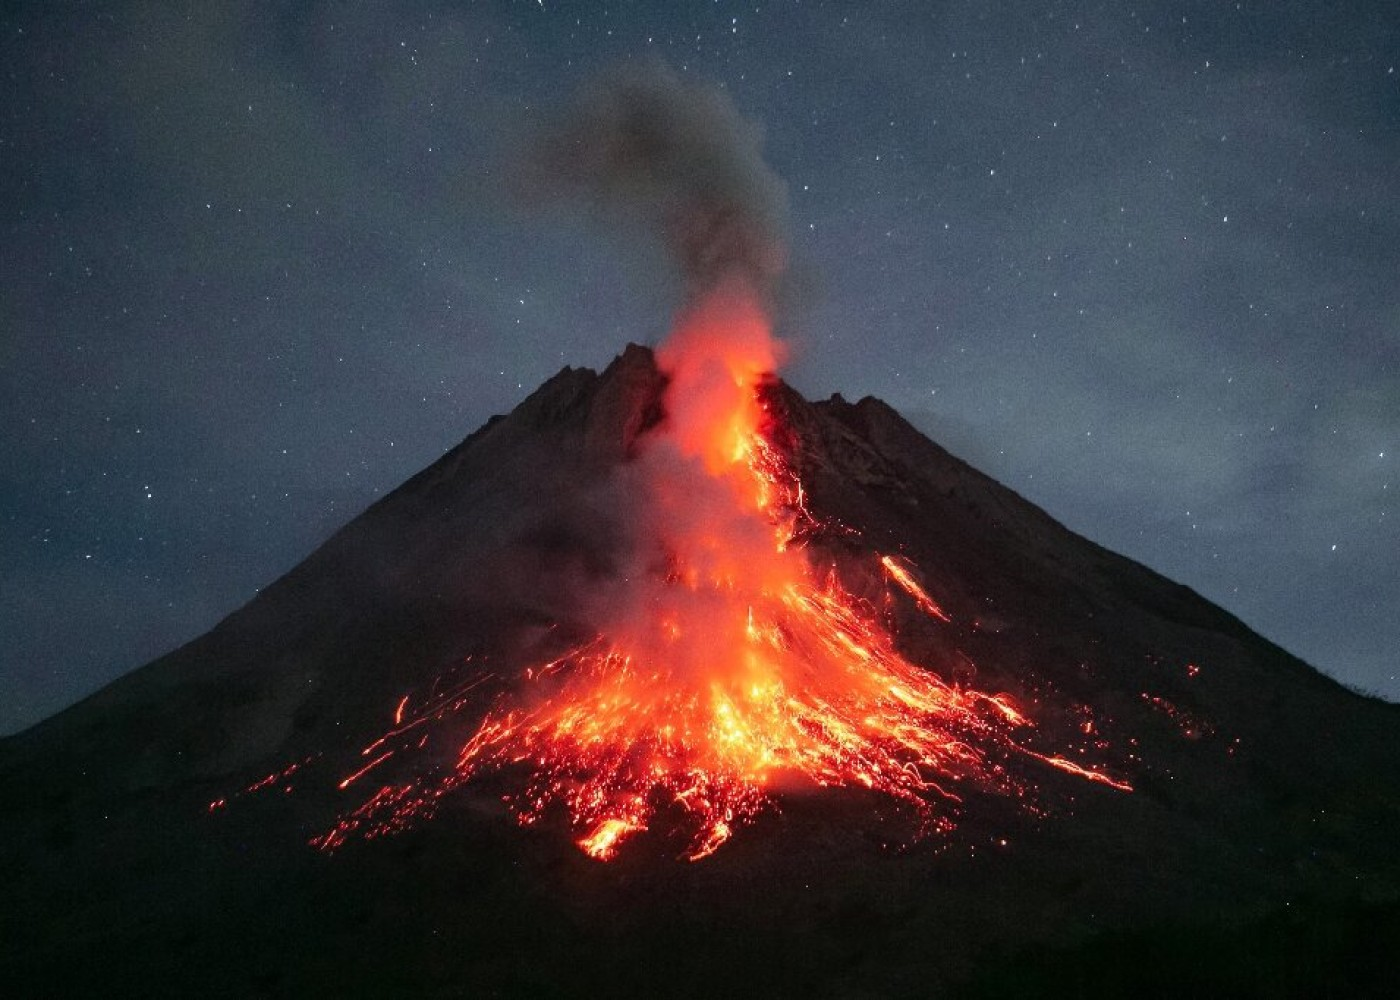 Vulkan püskürdü, alpinistlər yanaraq öldü - İtkin düşənlər var